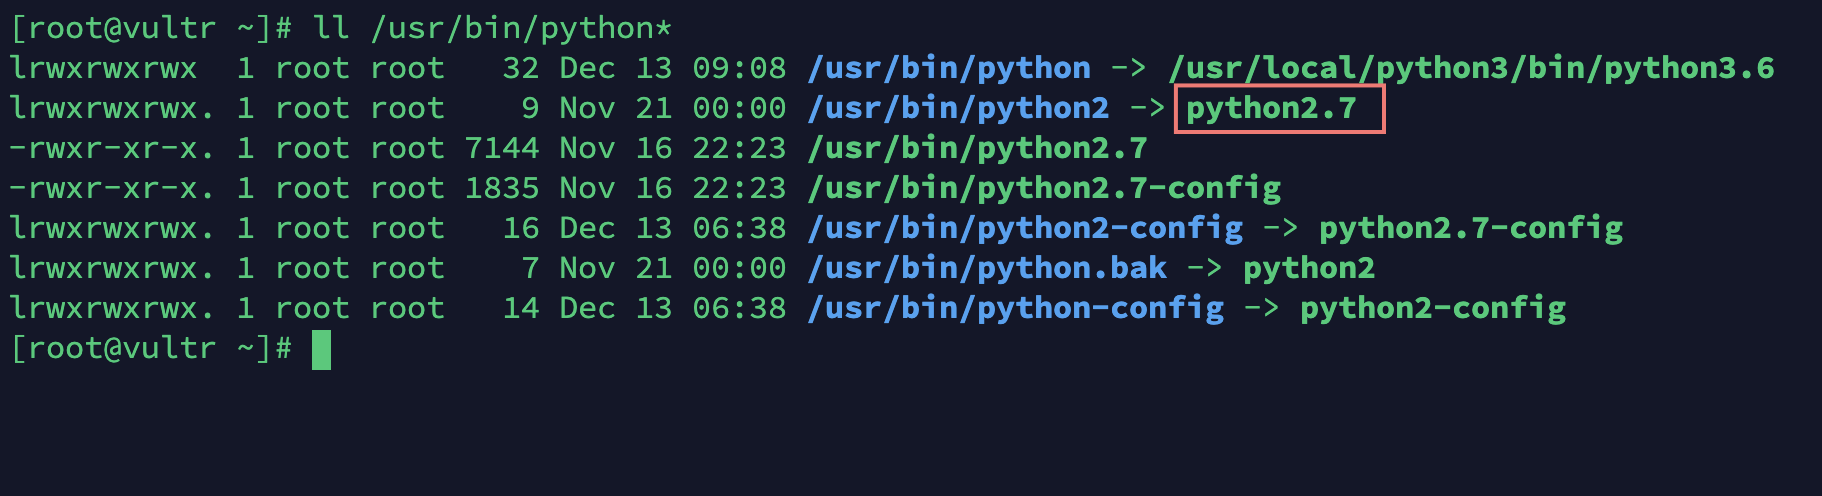 linux centos 7.x 安装 python3.x 替换 python2.x的过程解析